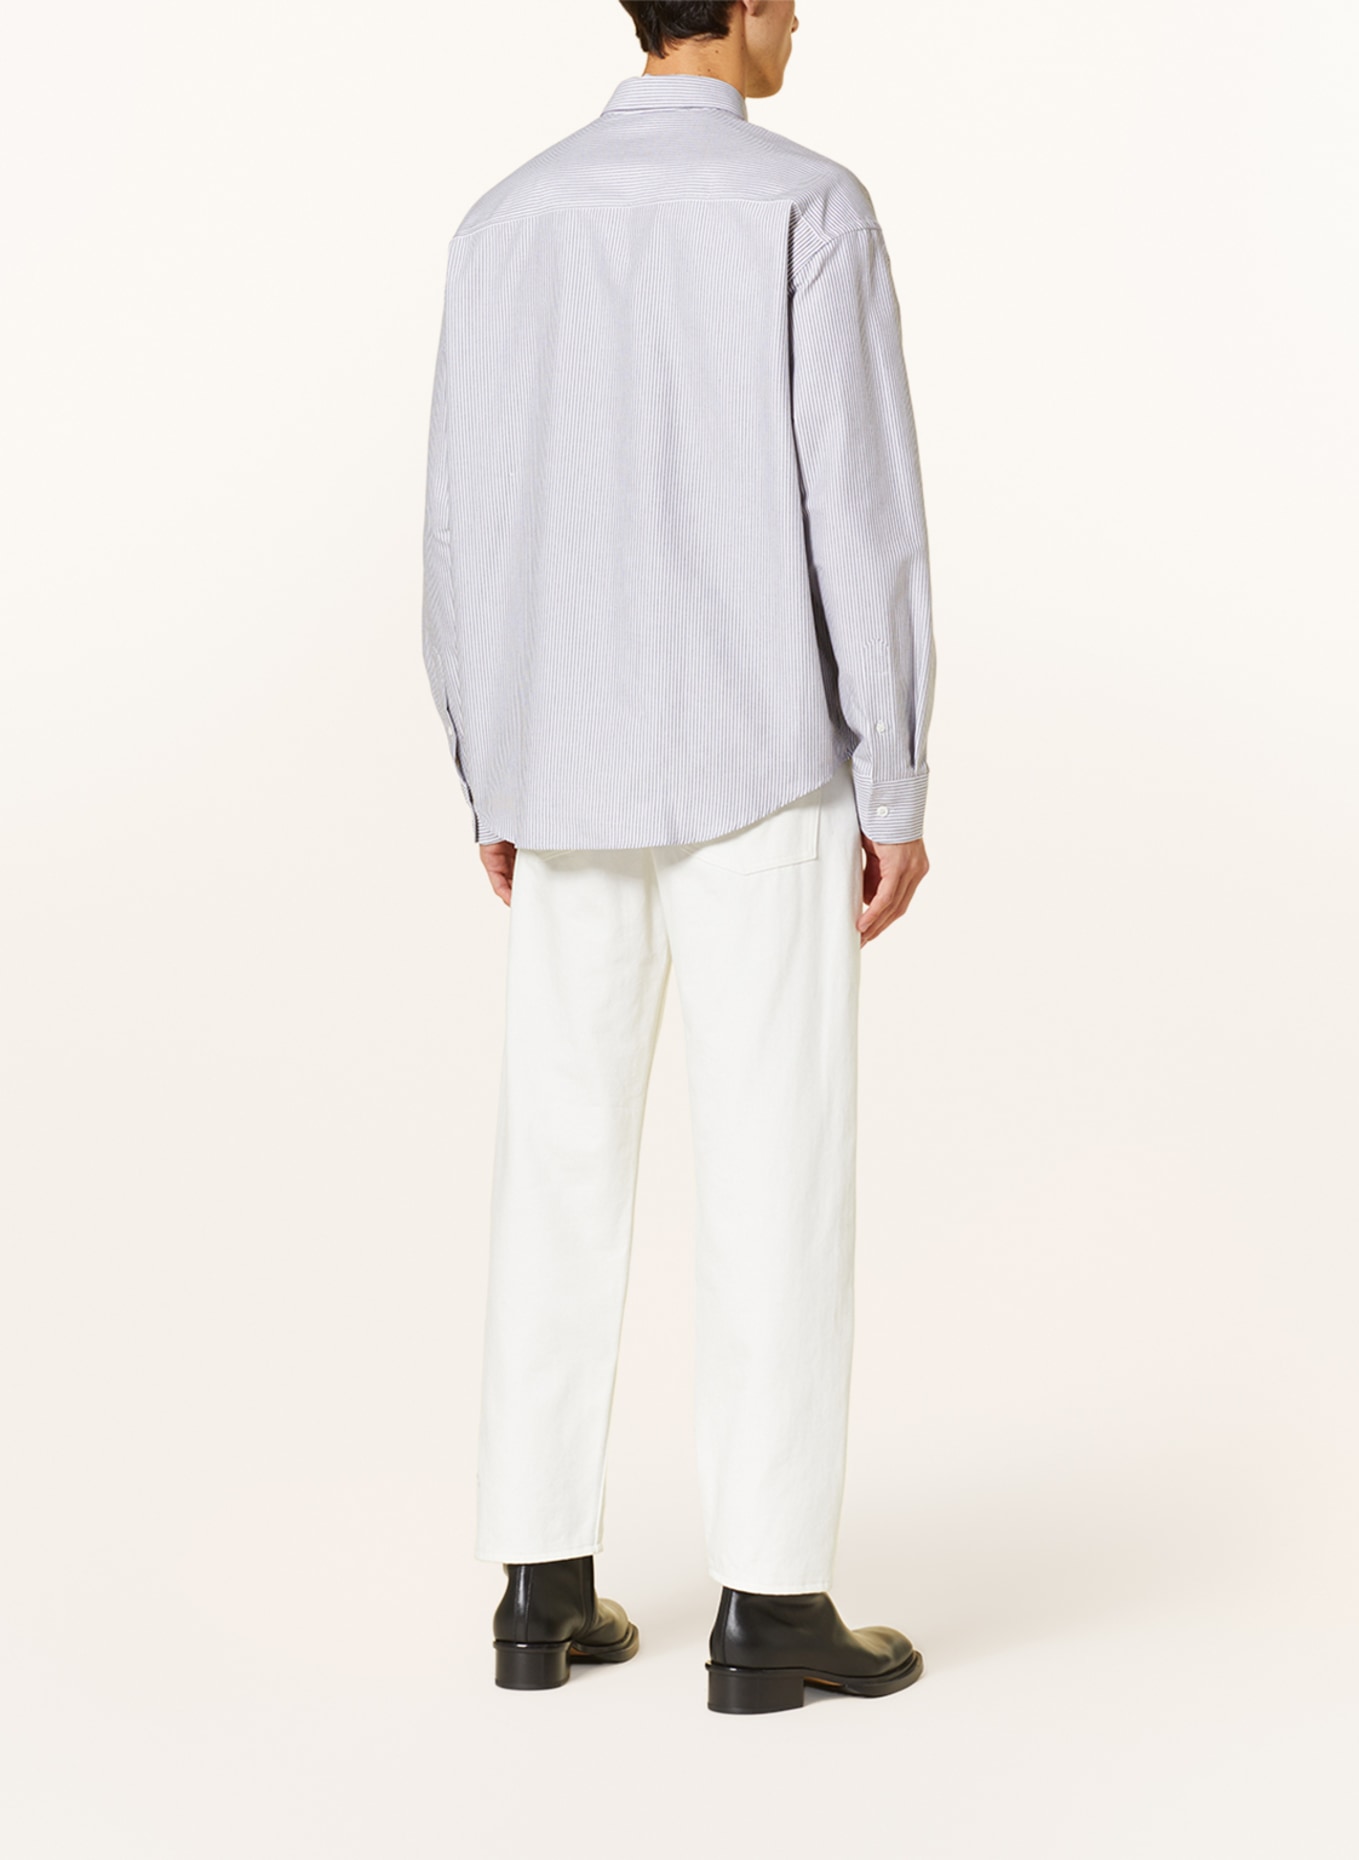 AMI PARIS Shirt comfort fit, Color: GRAY/ WHITE (Image 3)